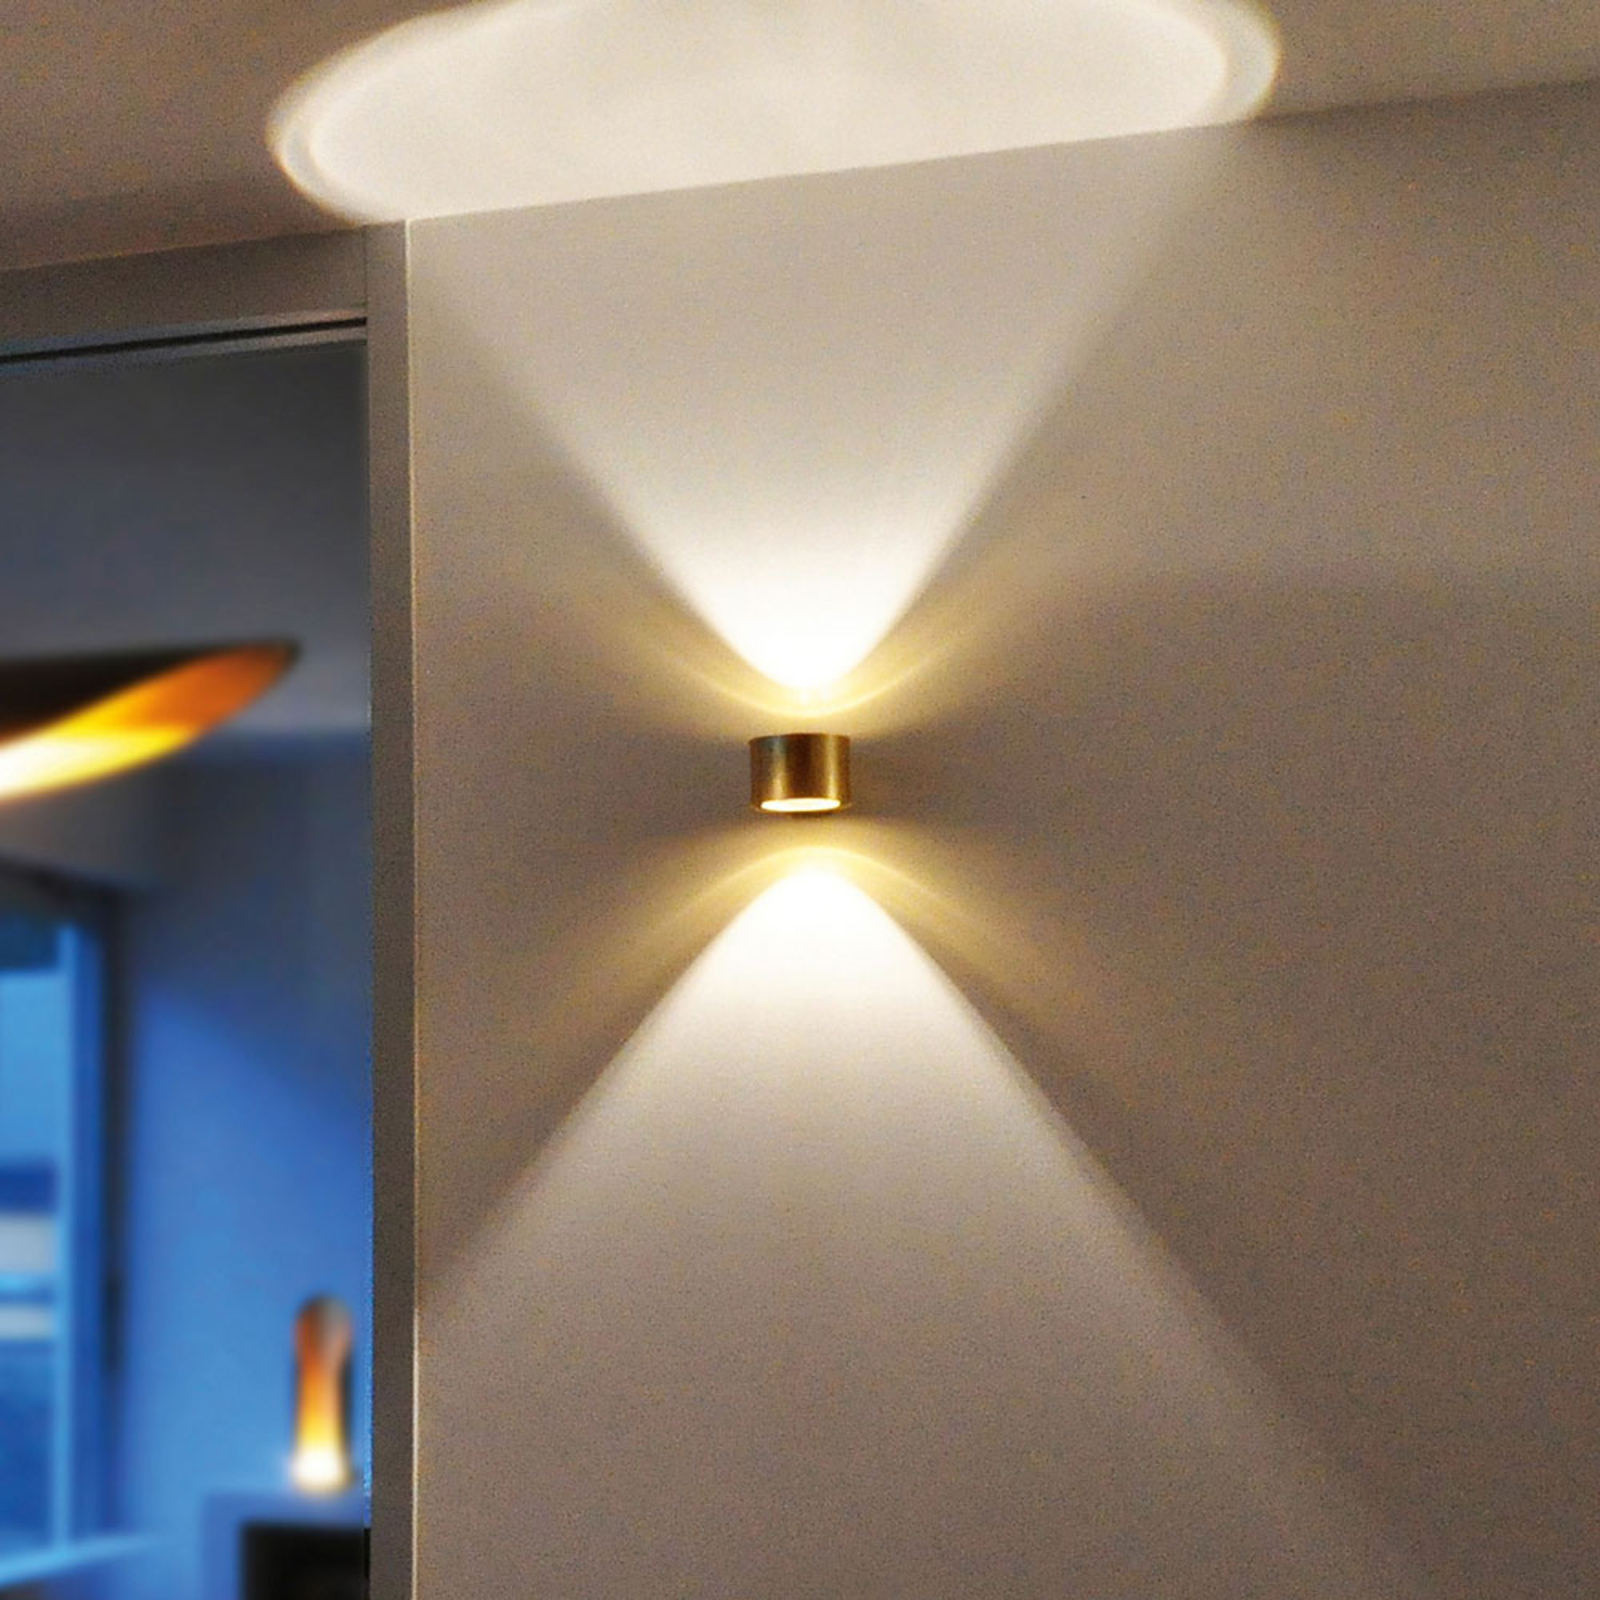 Zich voorstellen taart Hover BANKAMP Impulse LED wandlamp up/down | Lampen24.be